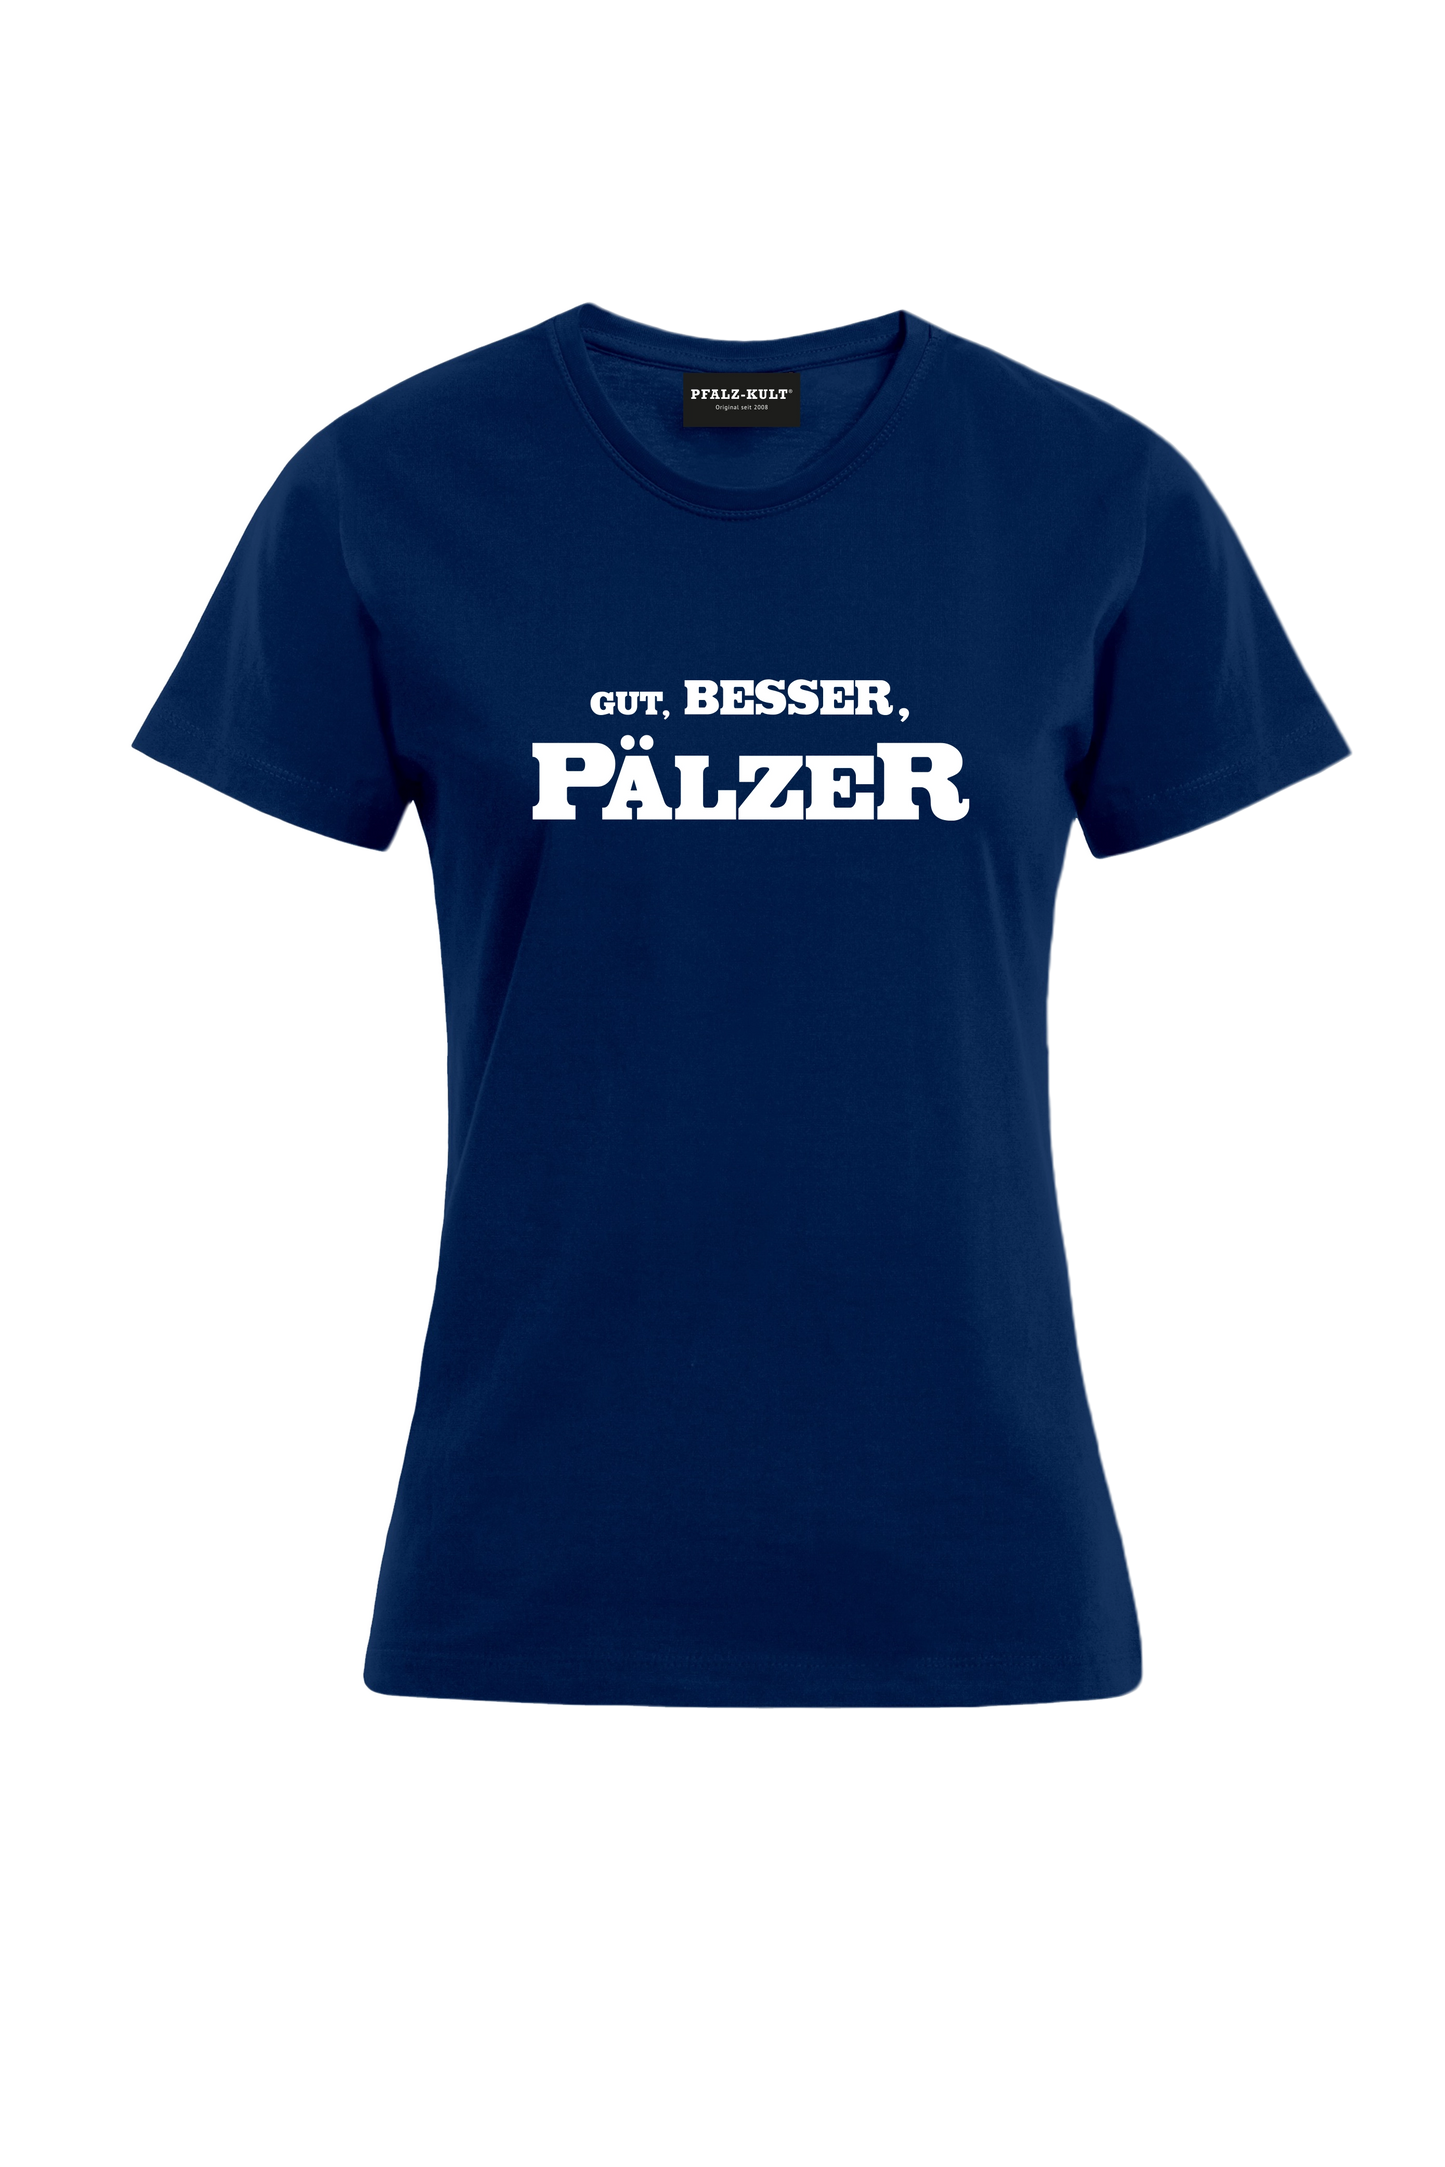 Gut, besser, Pälzer Damen T-Shirt in blau. Geschenkidee auf pfälzisch von Pfalz-Kult aus DÜW